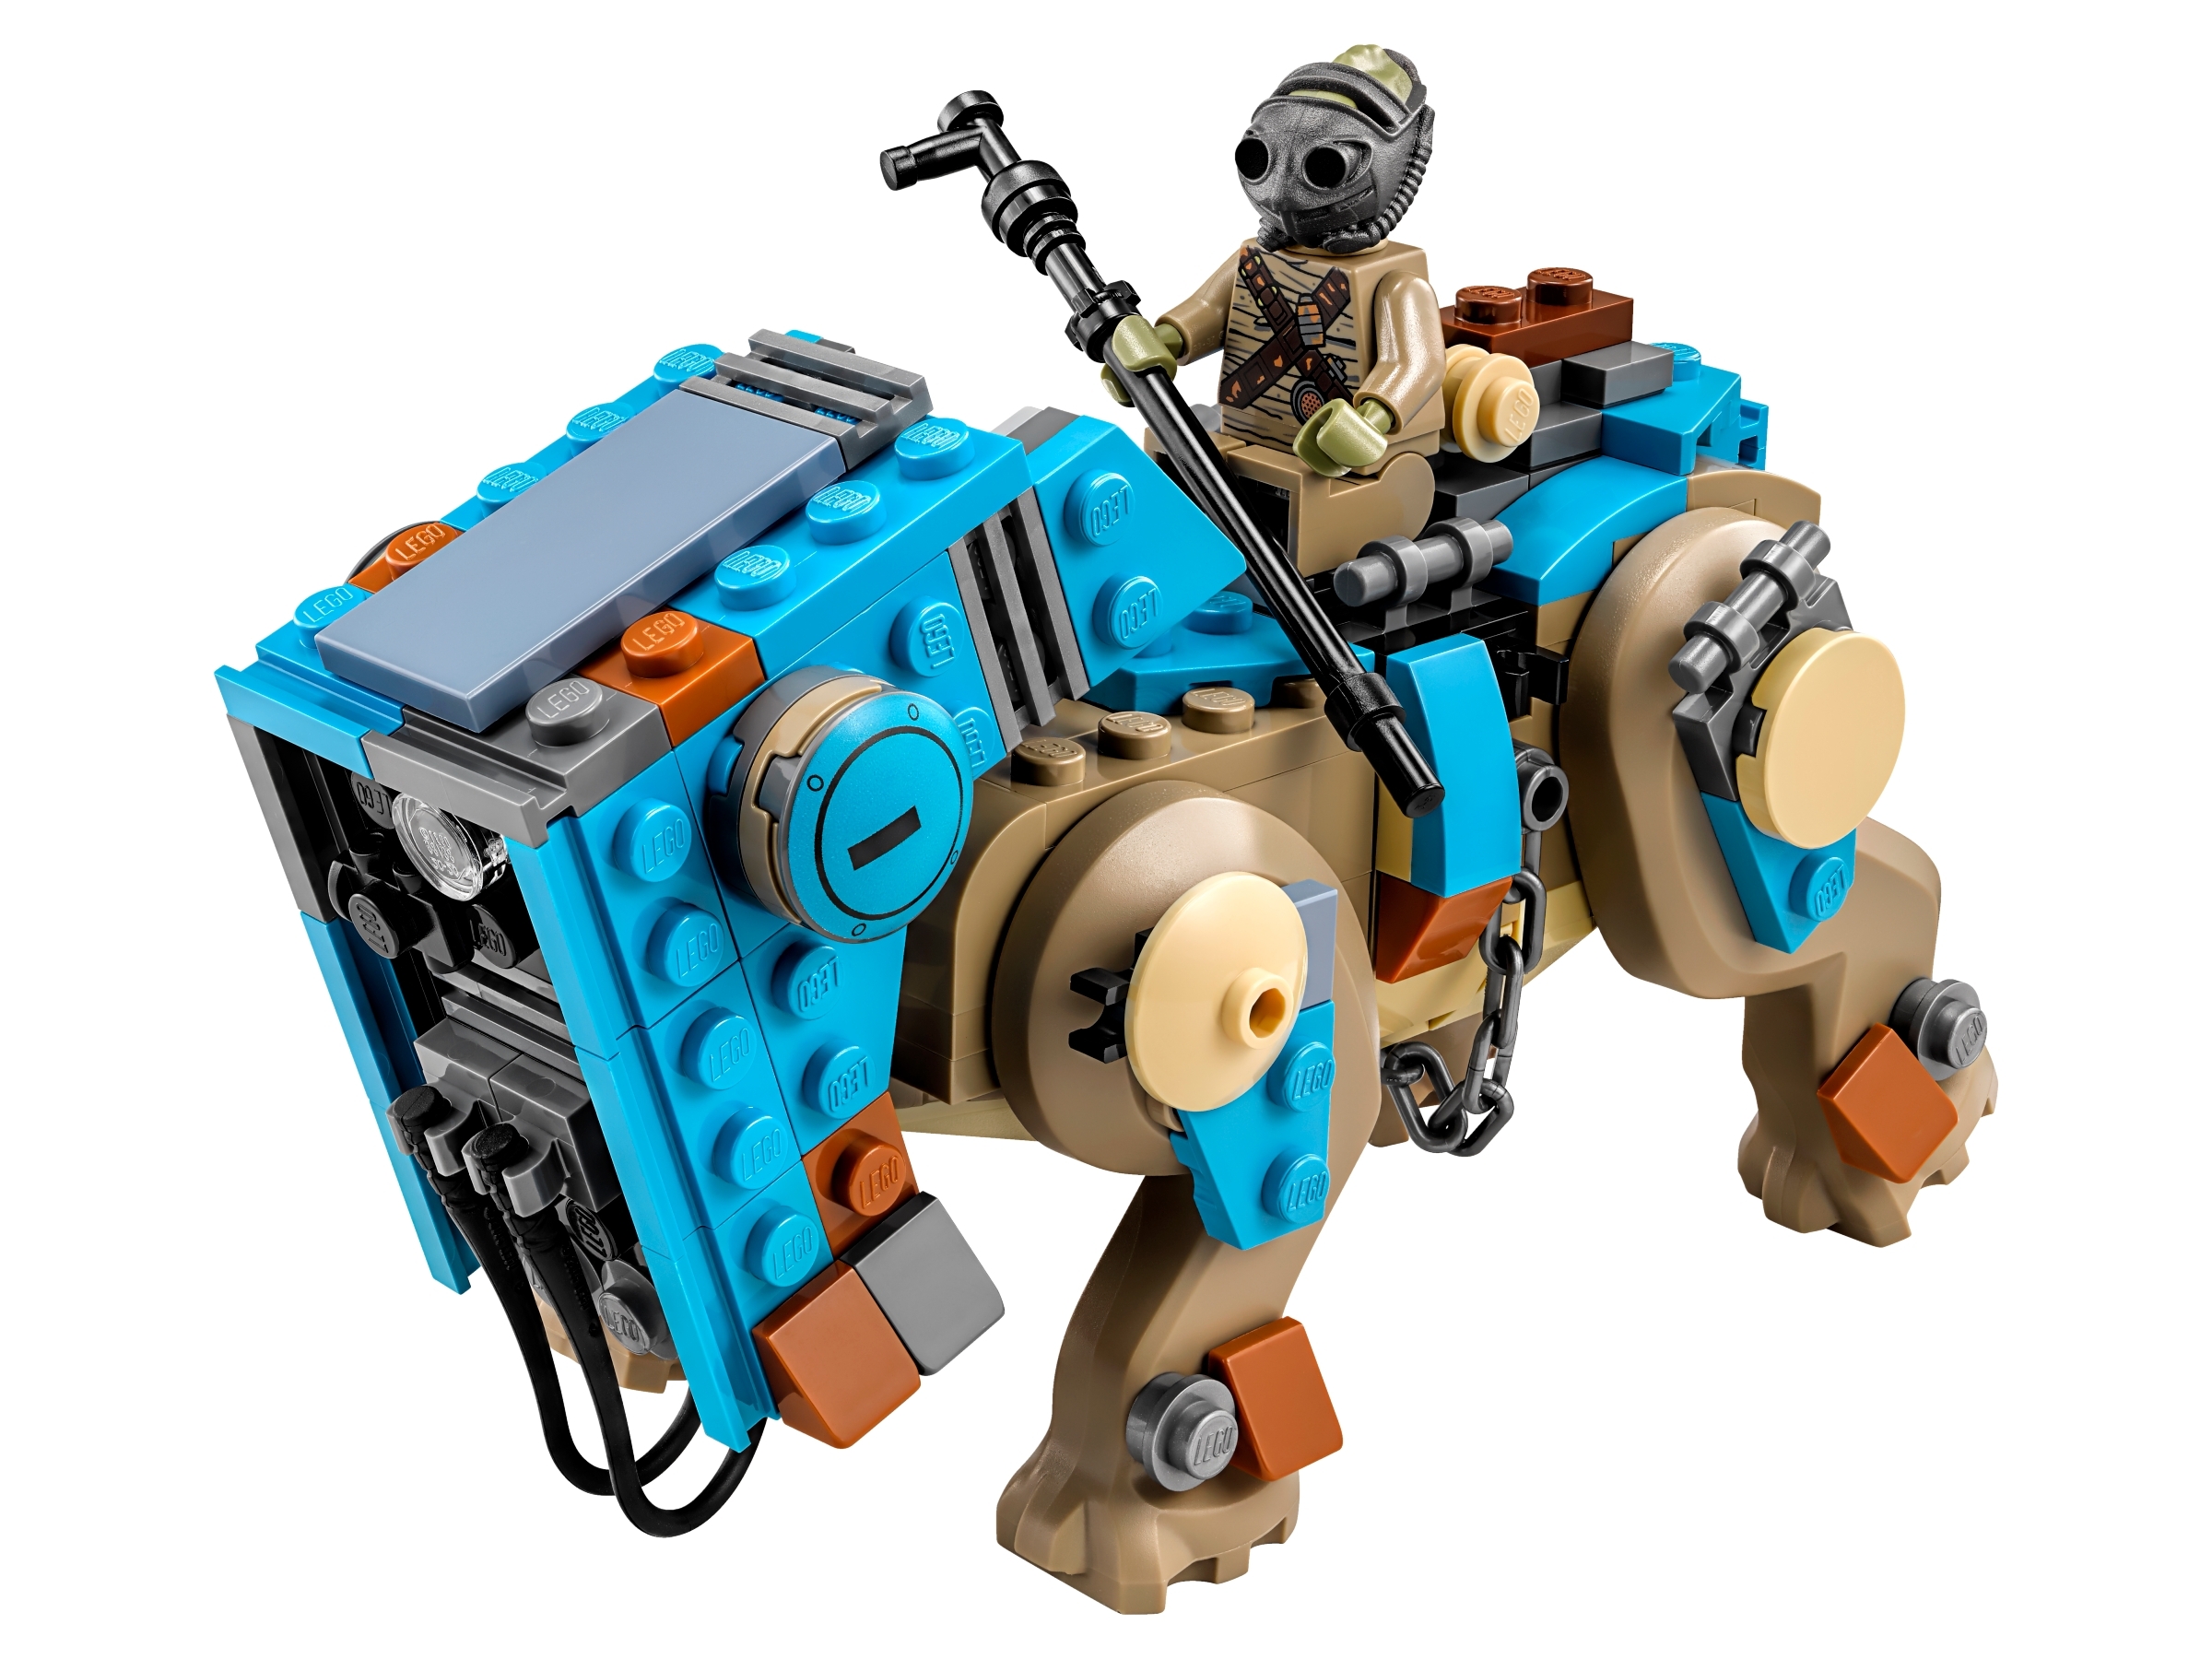 LEGO® Star Wars Creature Mechanical Legs split from set 75148 Encounter on Jakku 